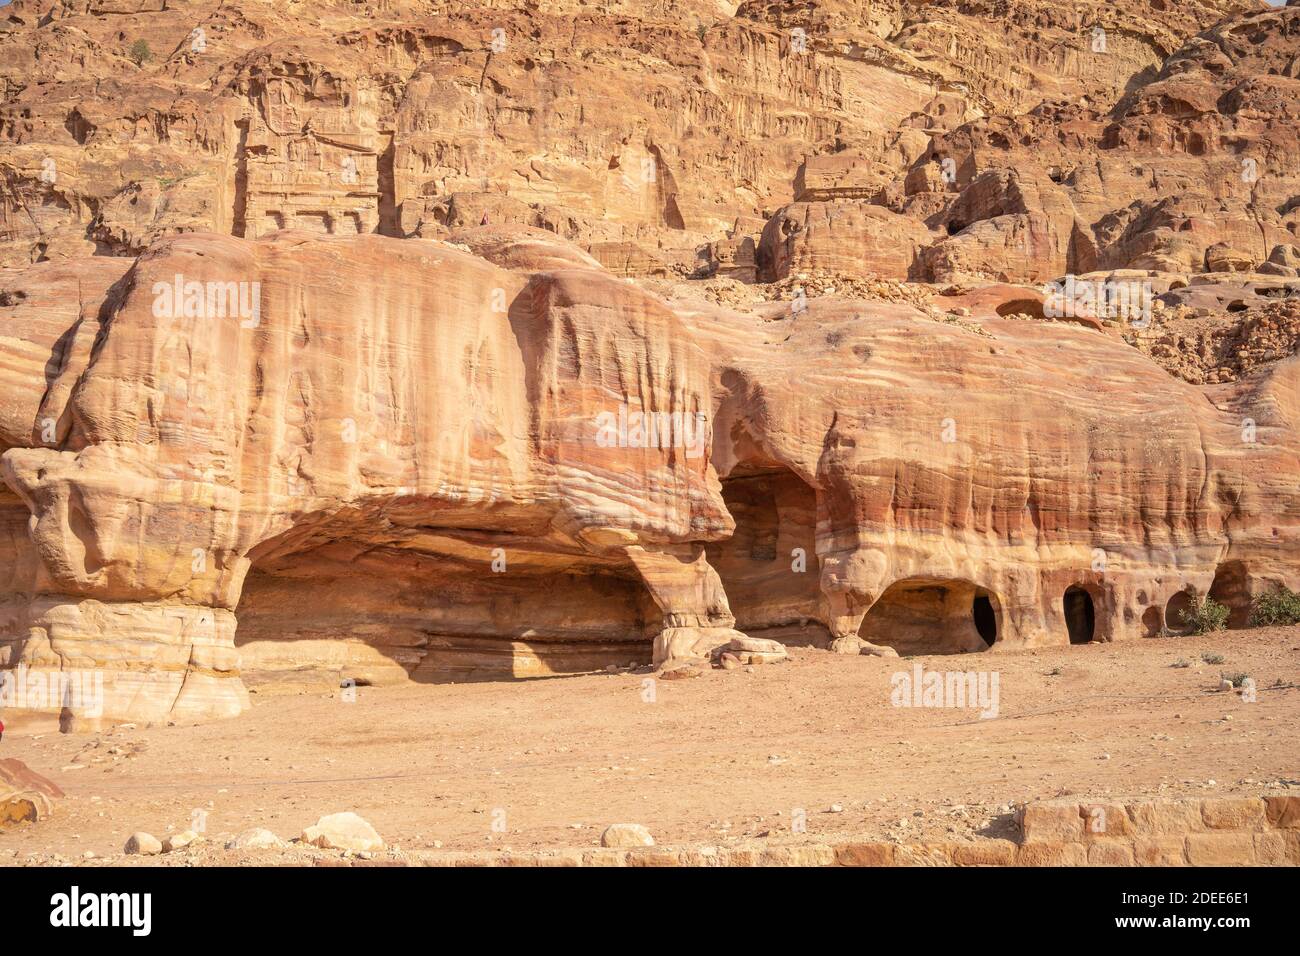 Vista de las cuevas del entierro en la antigua ciudad de Petra en Jordania. Las cuevas están talladas en piedra arenisca en la roca. Tema de los viajes en Jordania. Foto de stock